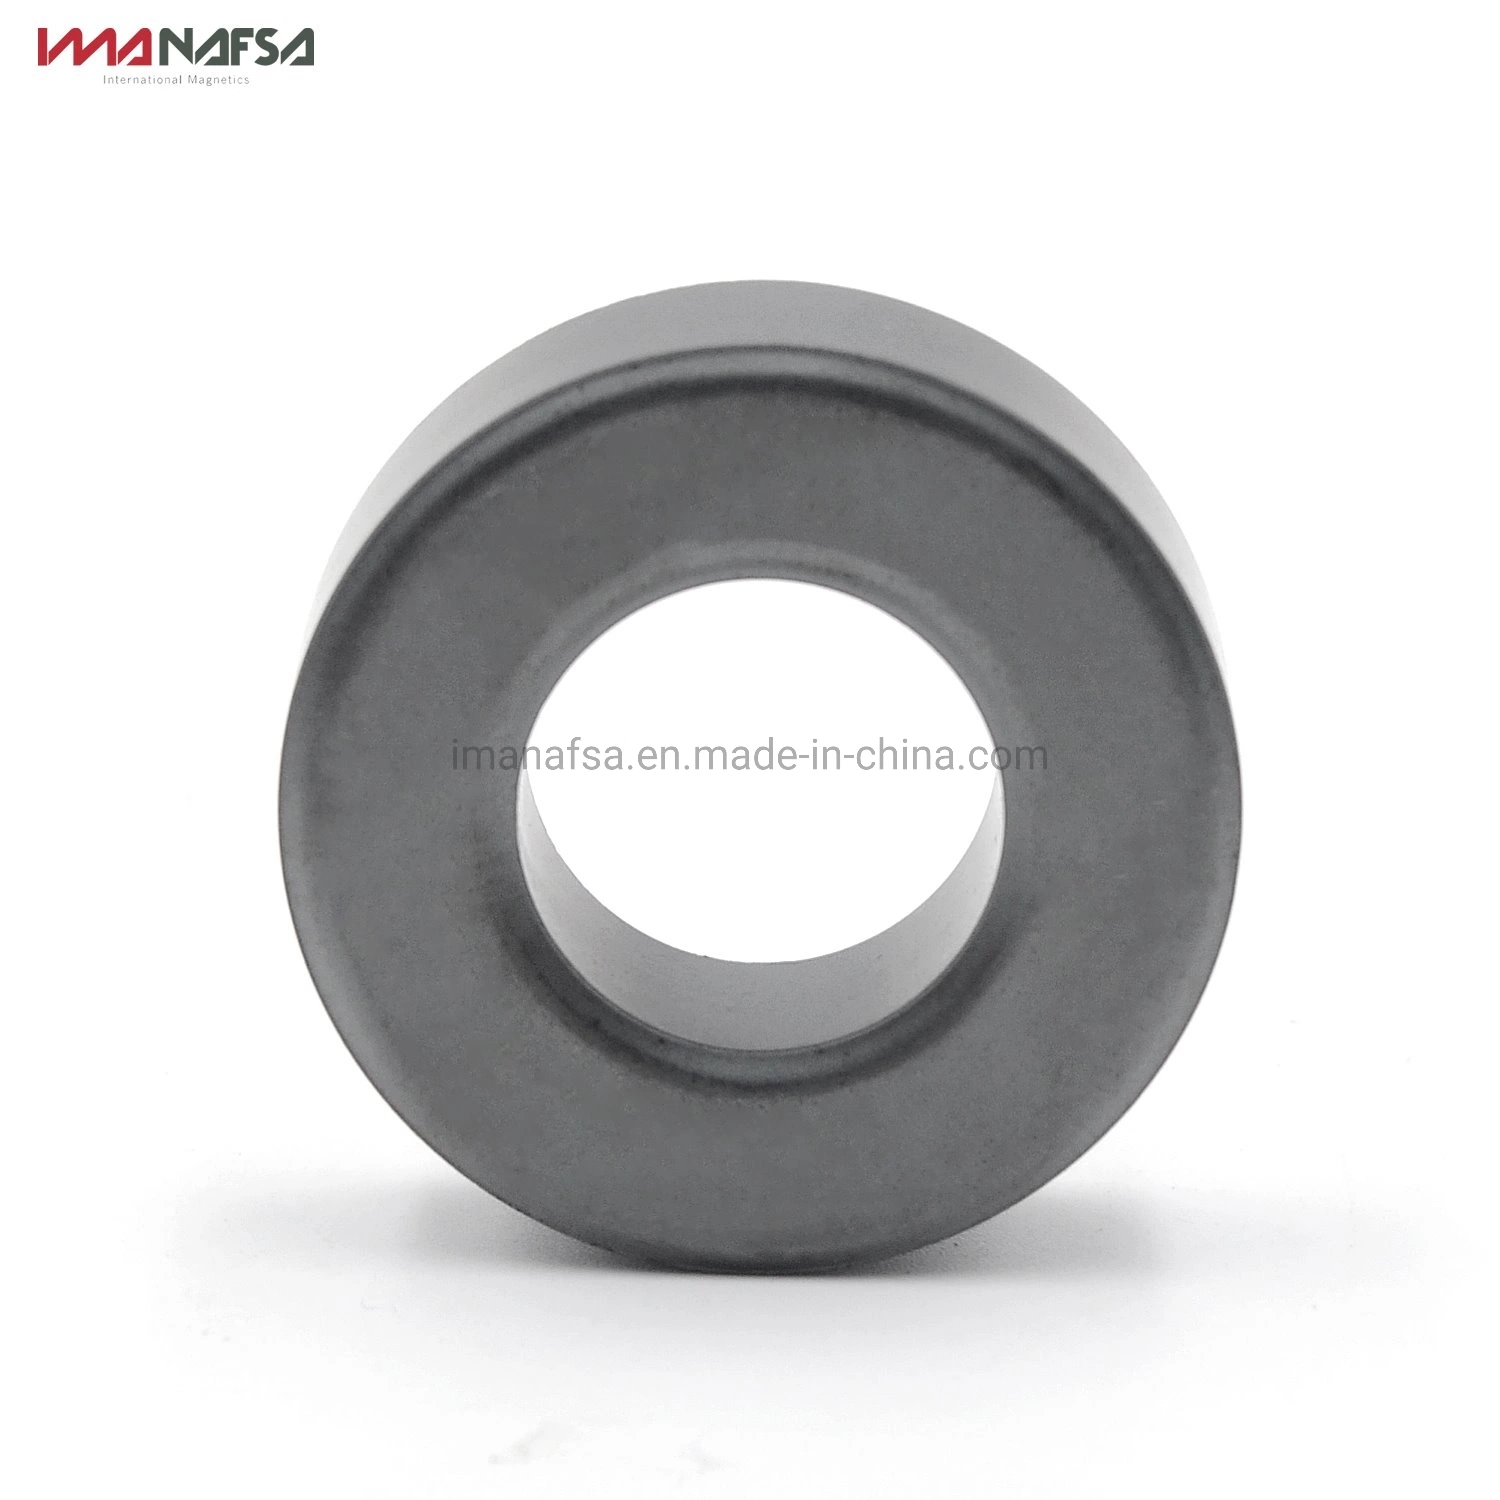 High Power Permanent Hard Ferrite Ring Magnets for Motor/Speaker